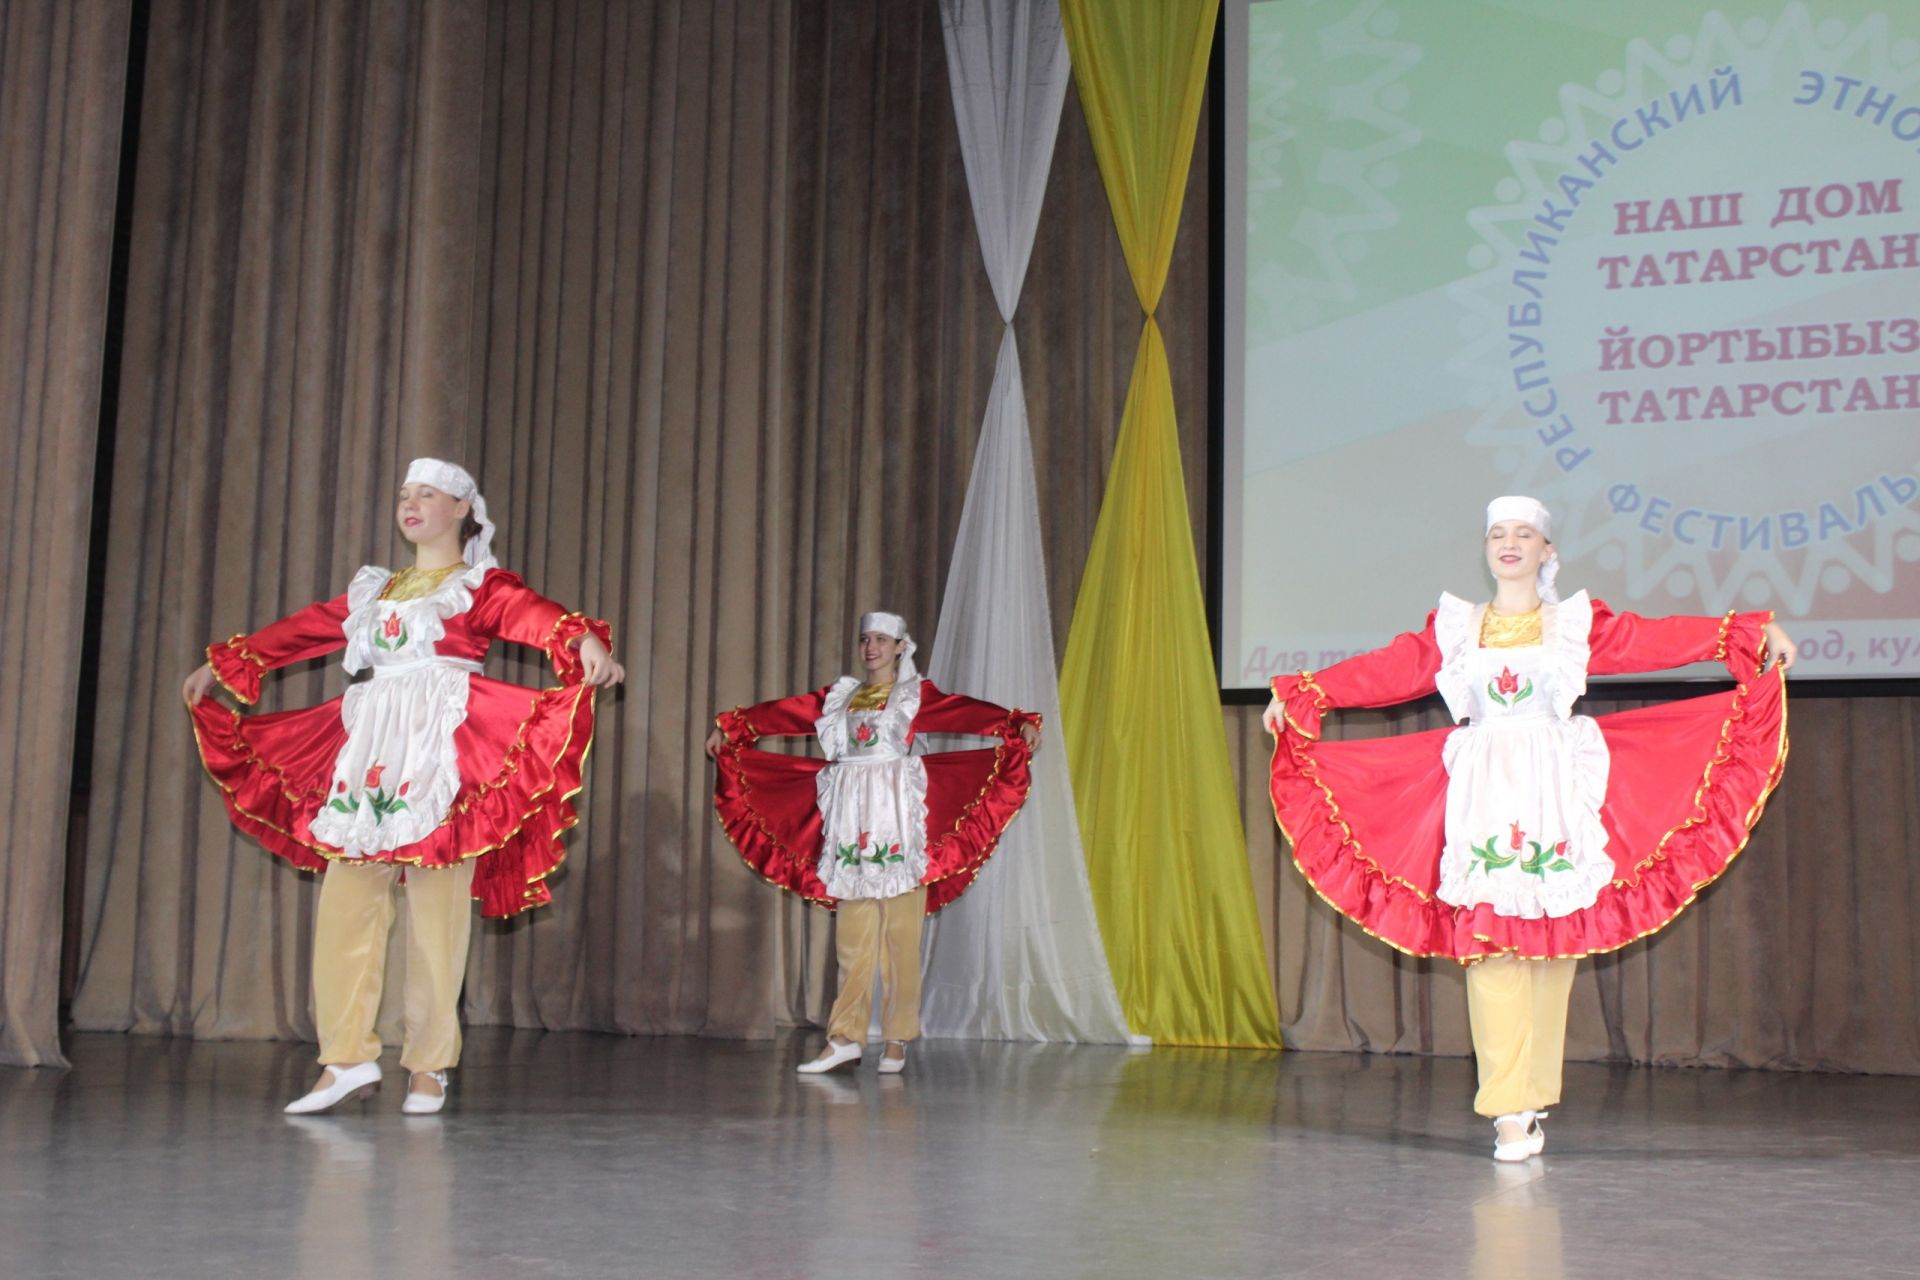 Менделеевцы участвуют в этнокультурном фестивале «Наш дом Татарстан»